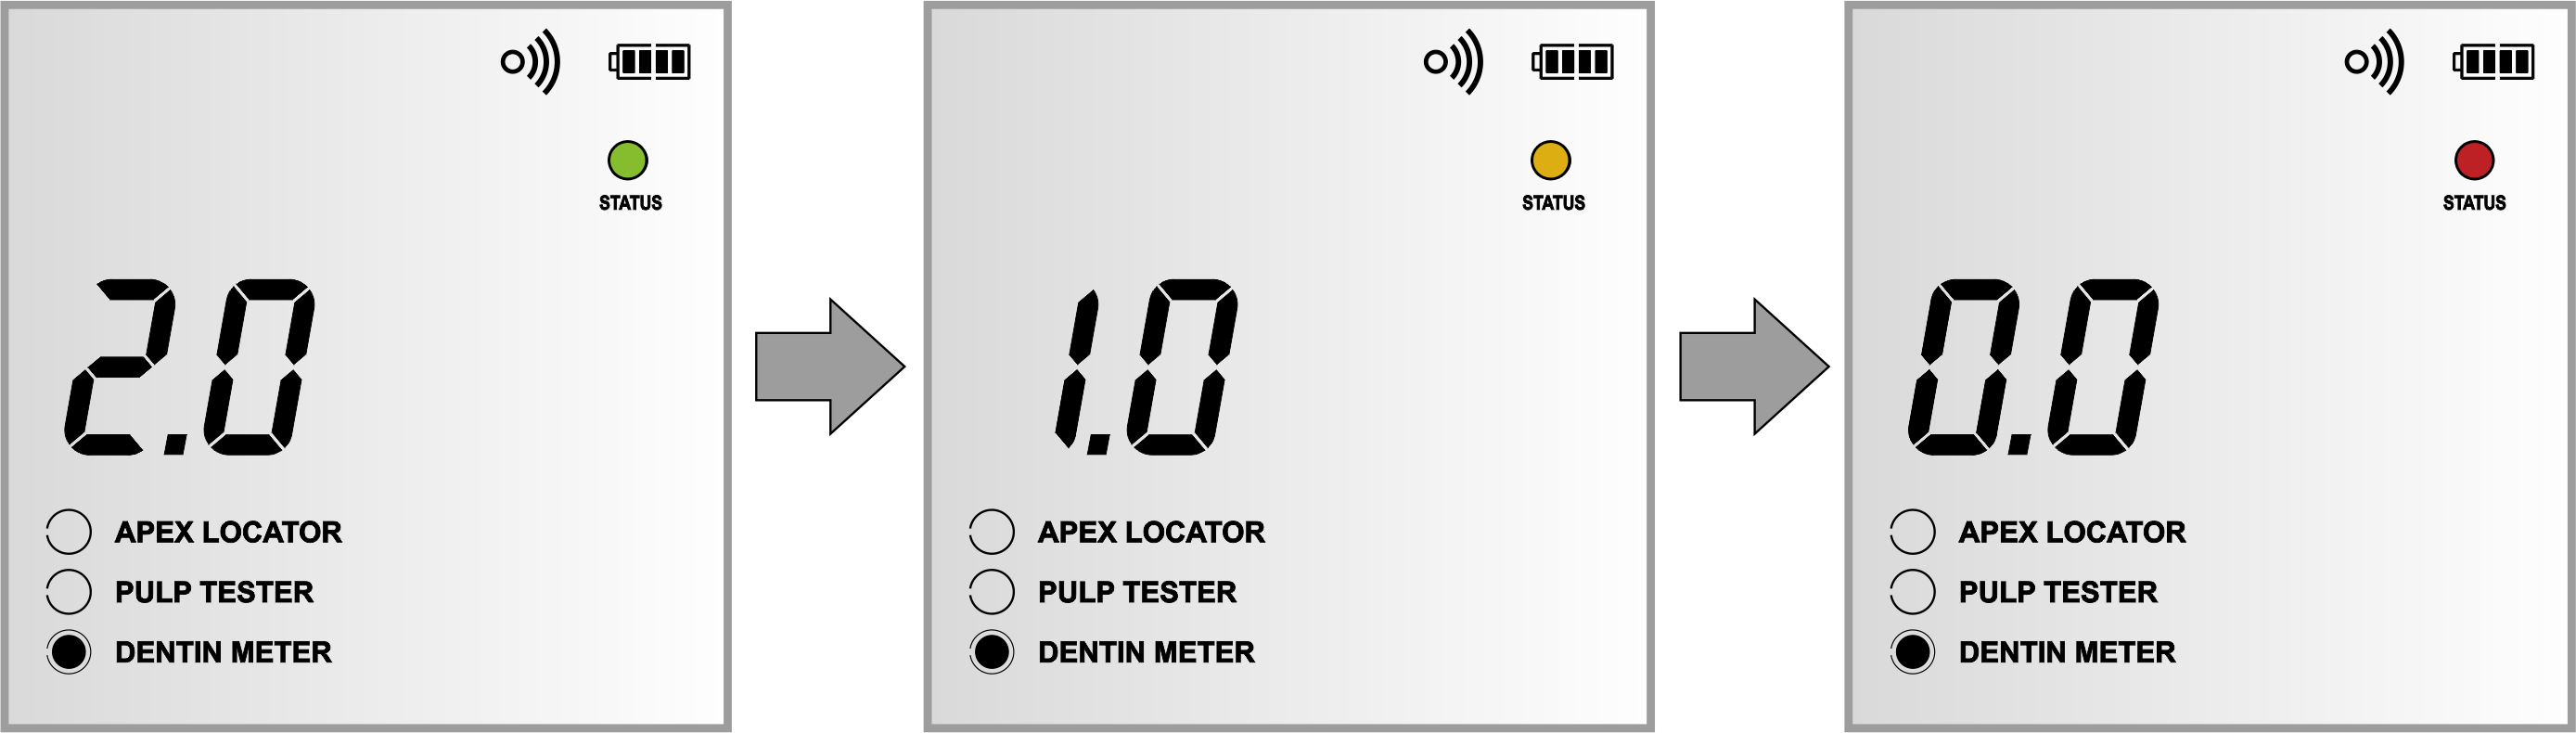 Apex locator 3in1 EndoEst 3D Geosoft cu pulp tester si dentimetru